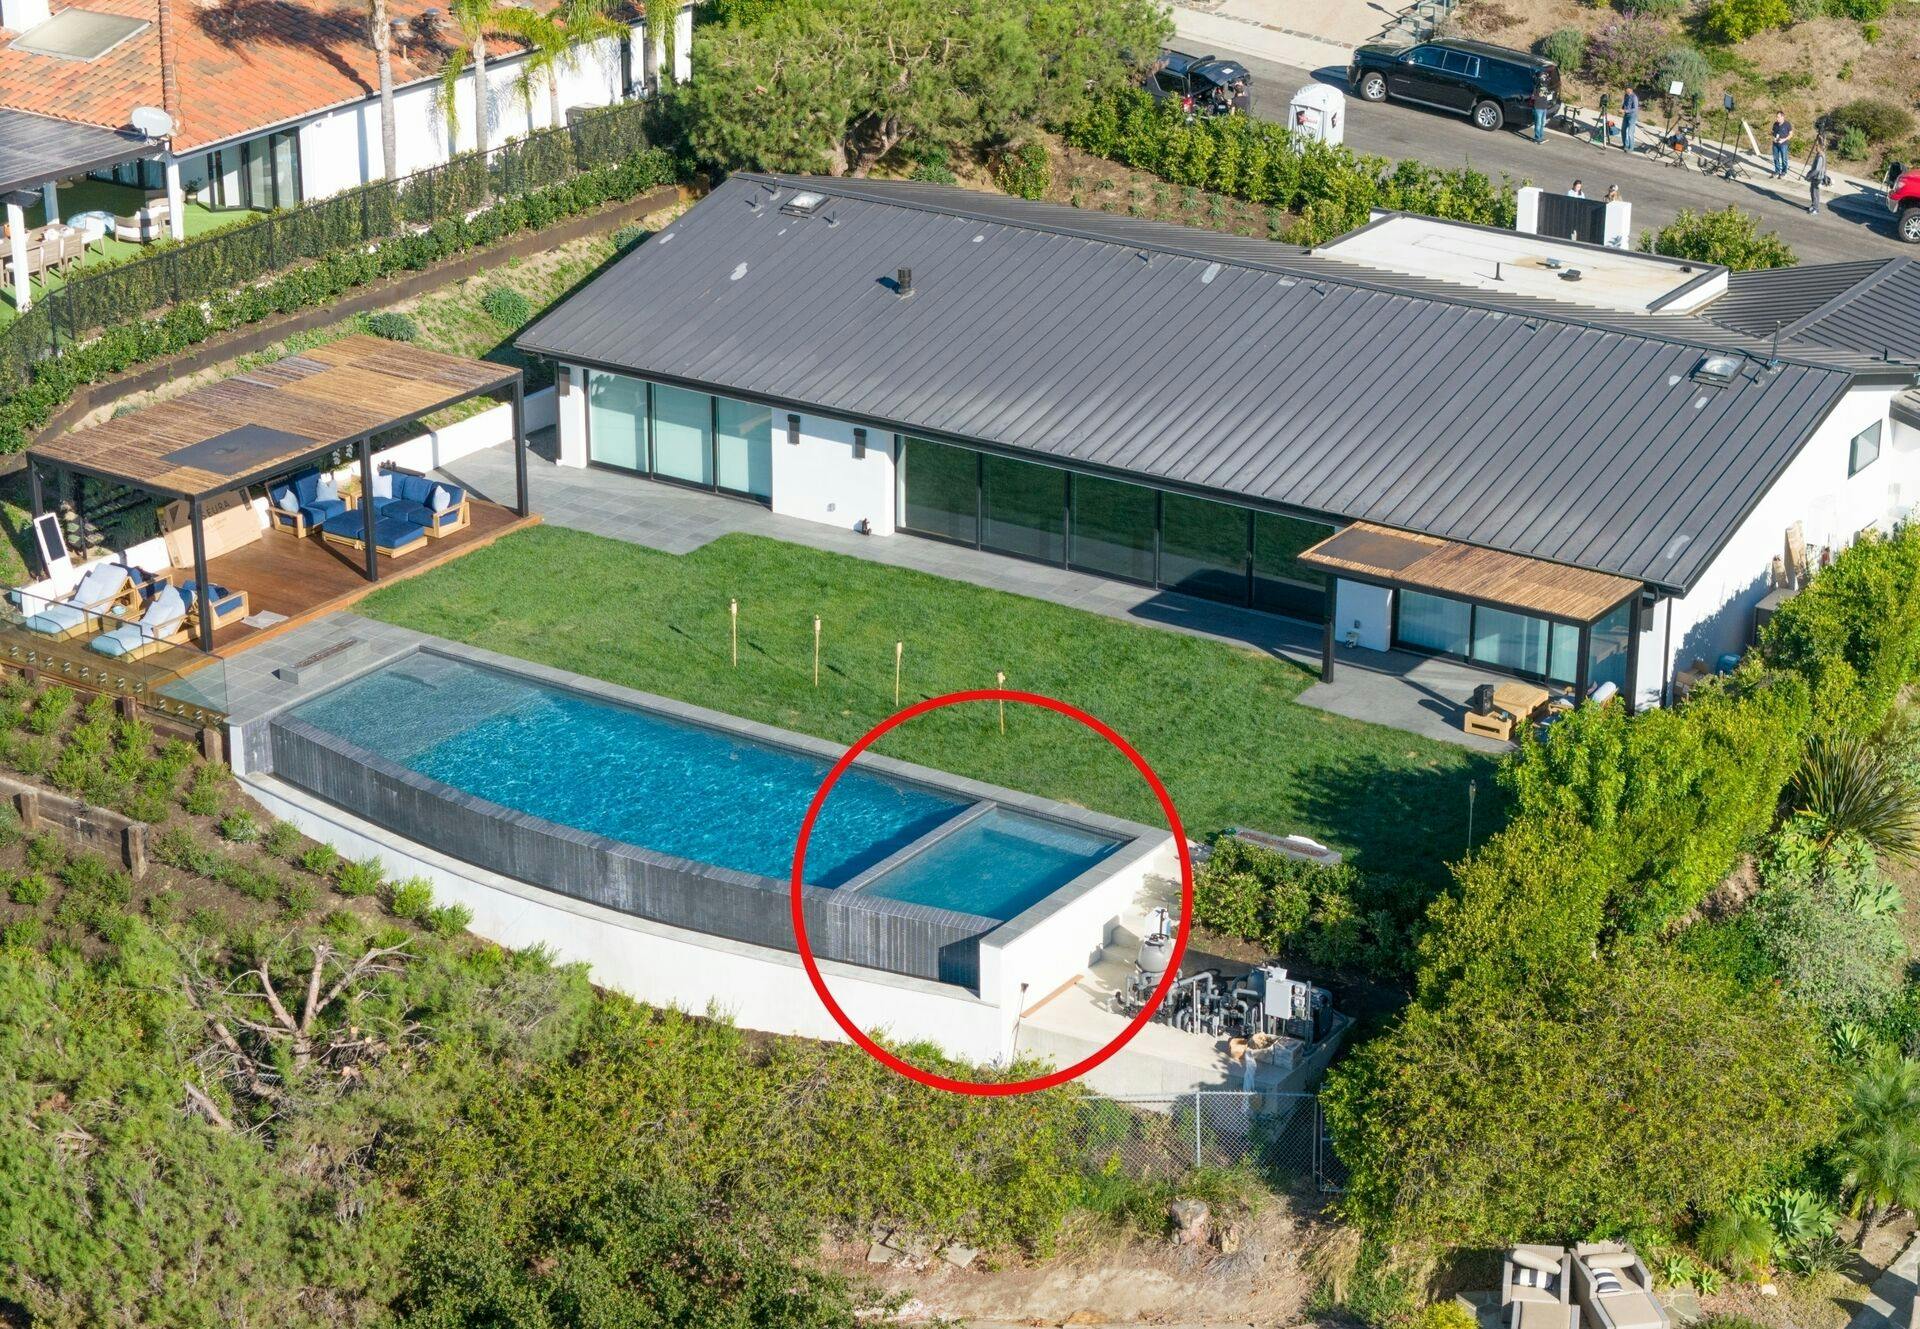 Det var i dette milliondyre hjem i Pacific Palisades, Los Angeles, at Matthew Perry døde.